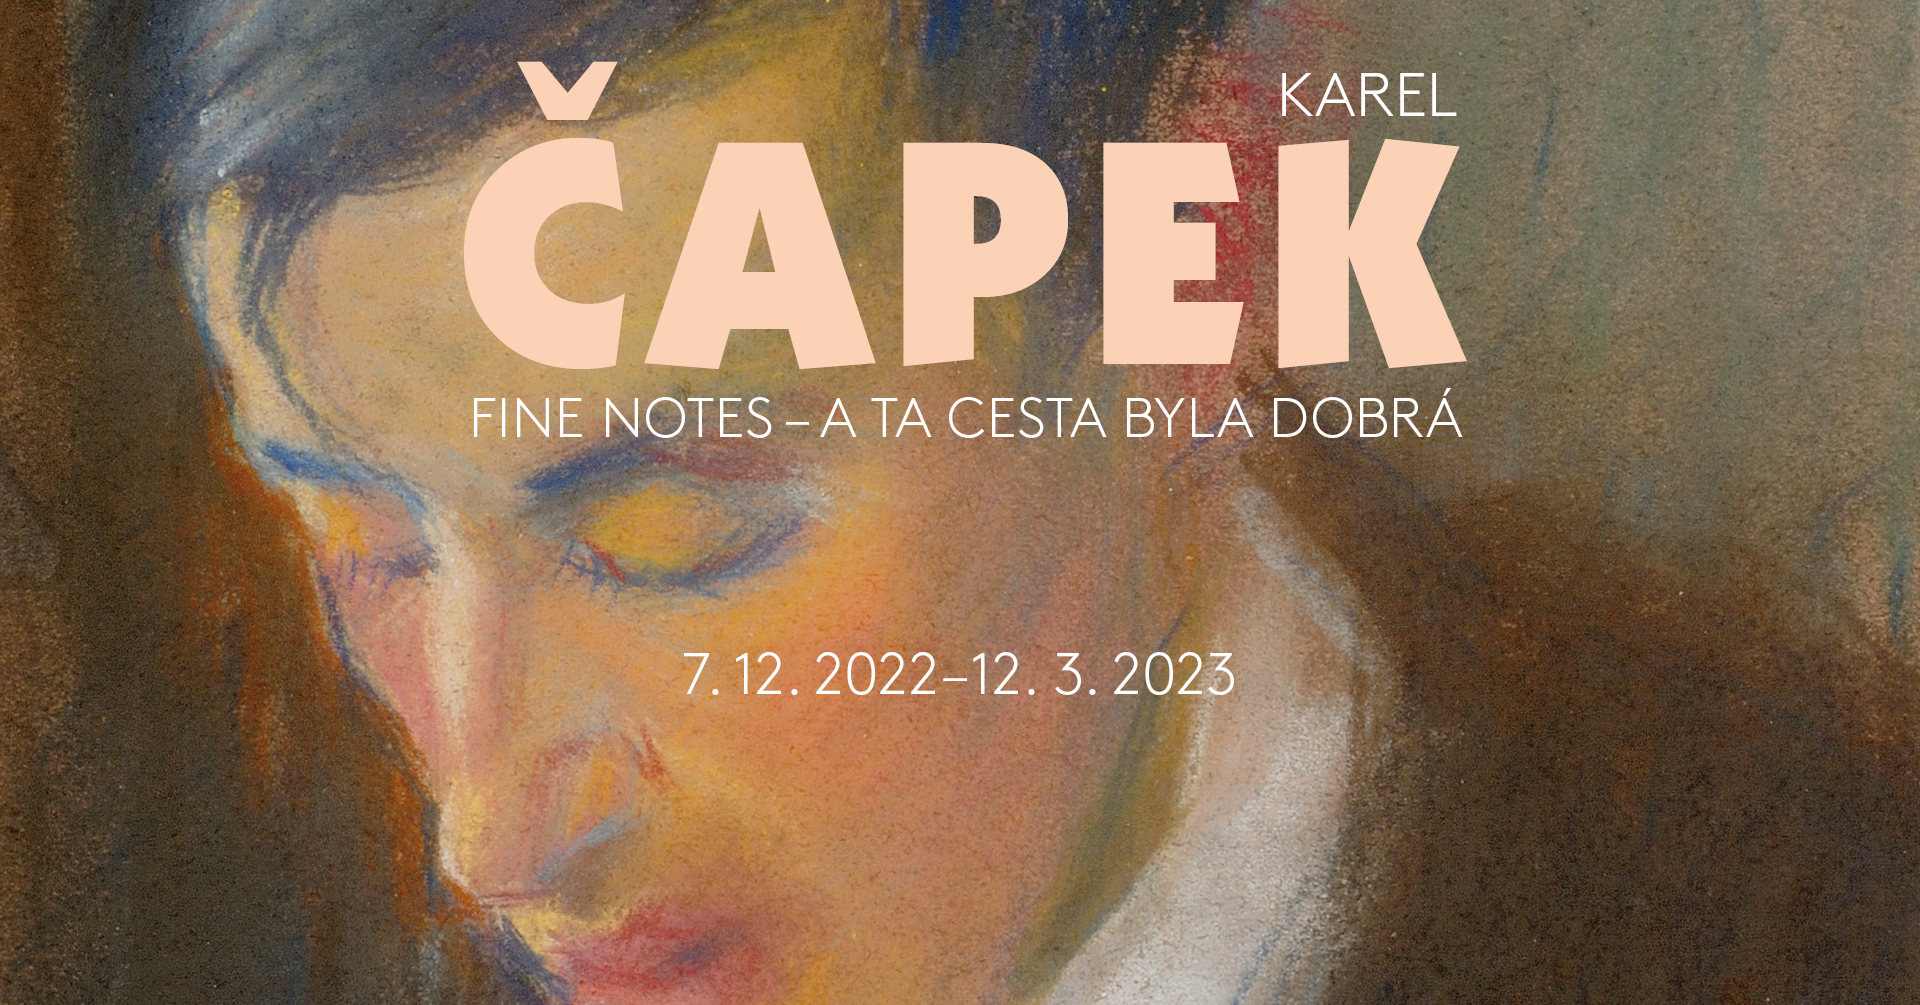 KAREL ČAPEK: FINE NOTES – A TA CESTA BYLA DOBRÁ